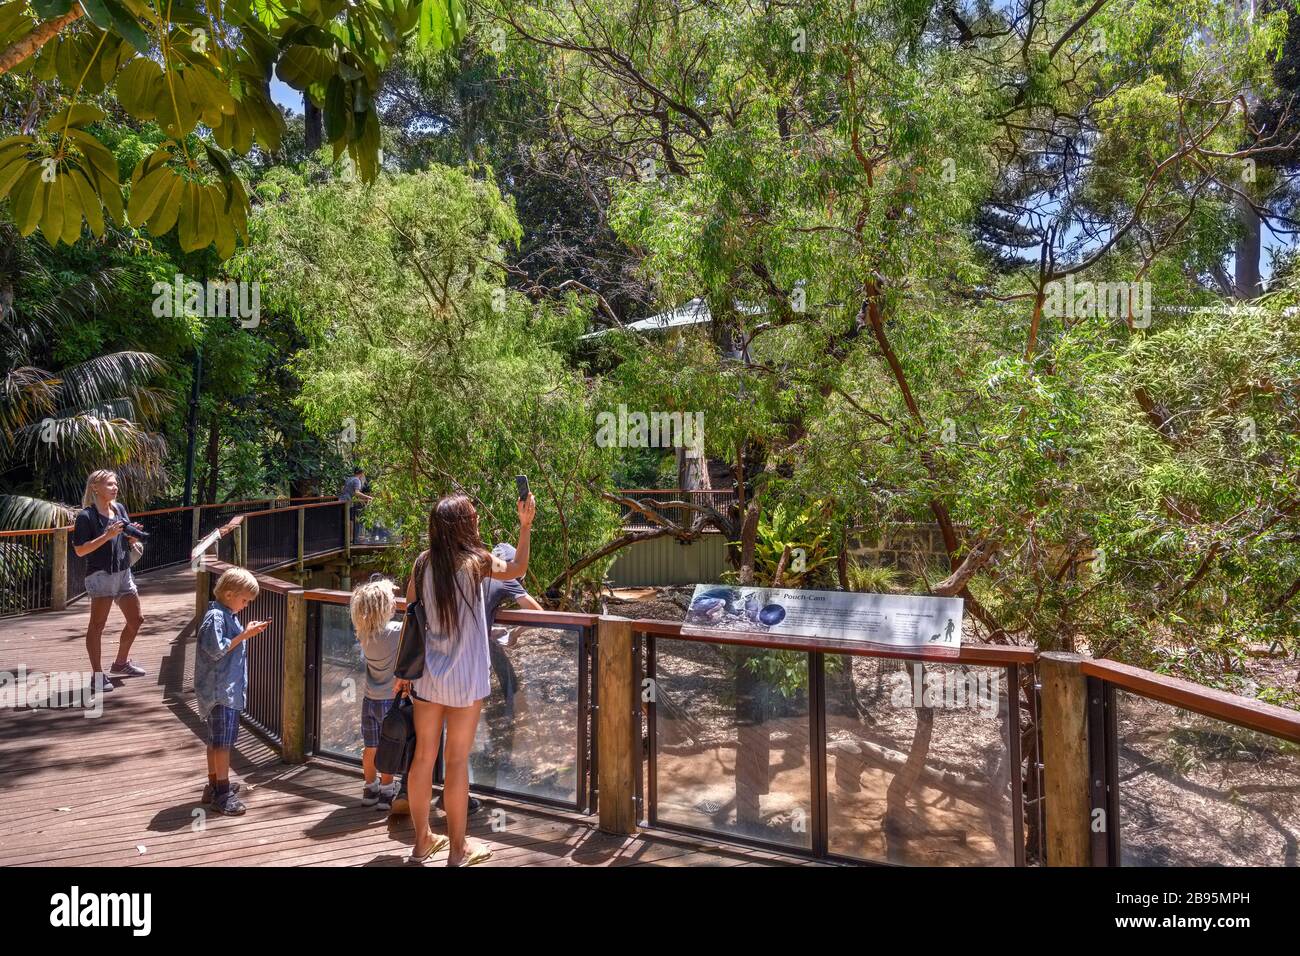 Les visiteurs qui prennent des photos de koalas (Phascolarctos cinereus), souvent appelés Koala Bears, Perth Zoo, Perth, Australie occidentale, Australie Banque D'Images